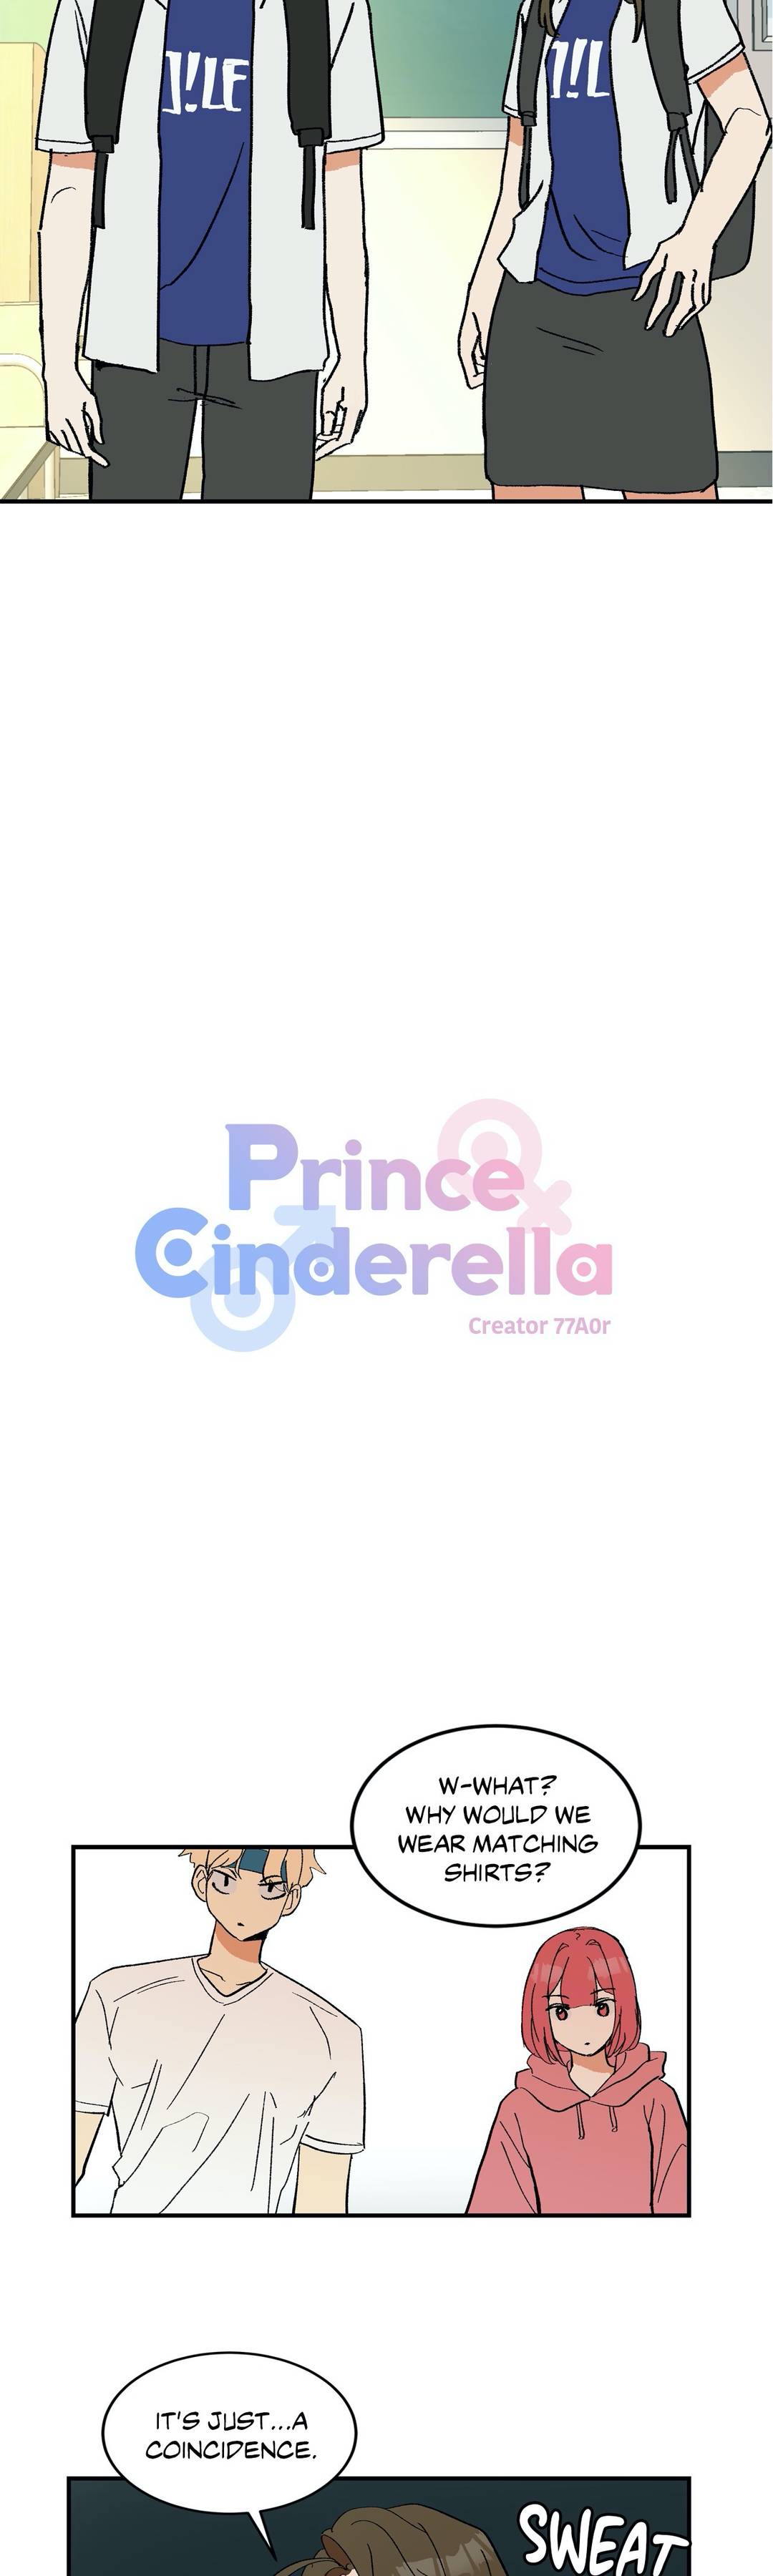 Prince Cinderella image